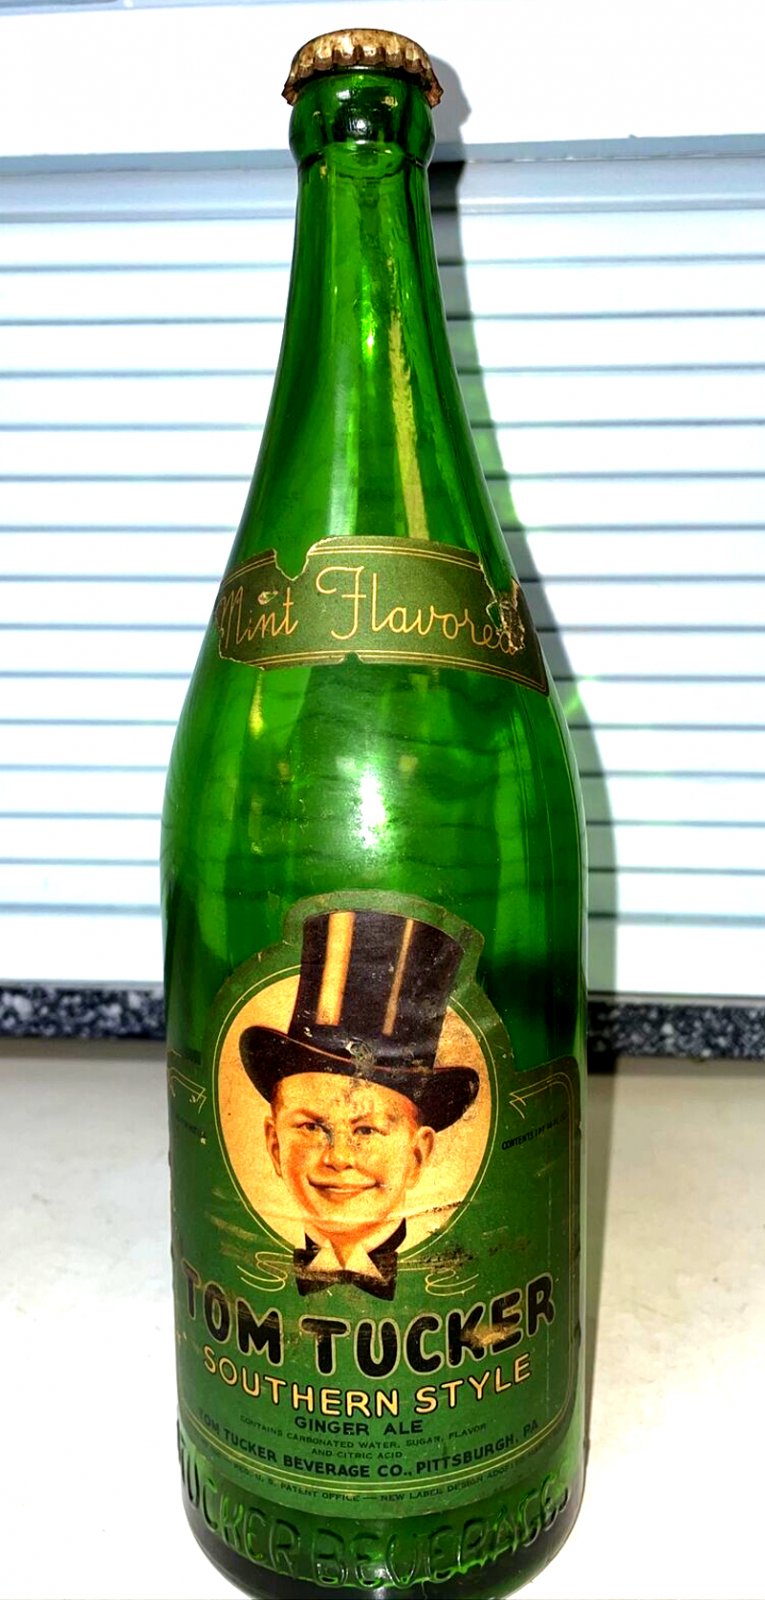 Tom Tucker Bottle Pittsburgh eBay August 2023.jpg